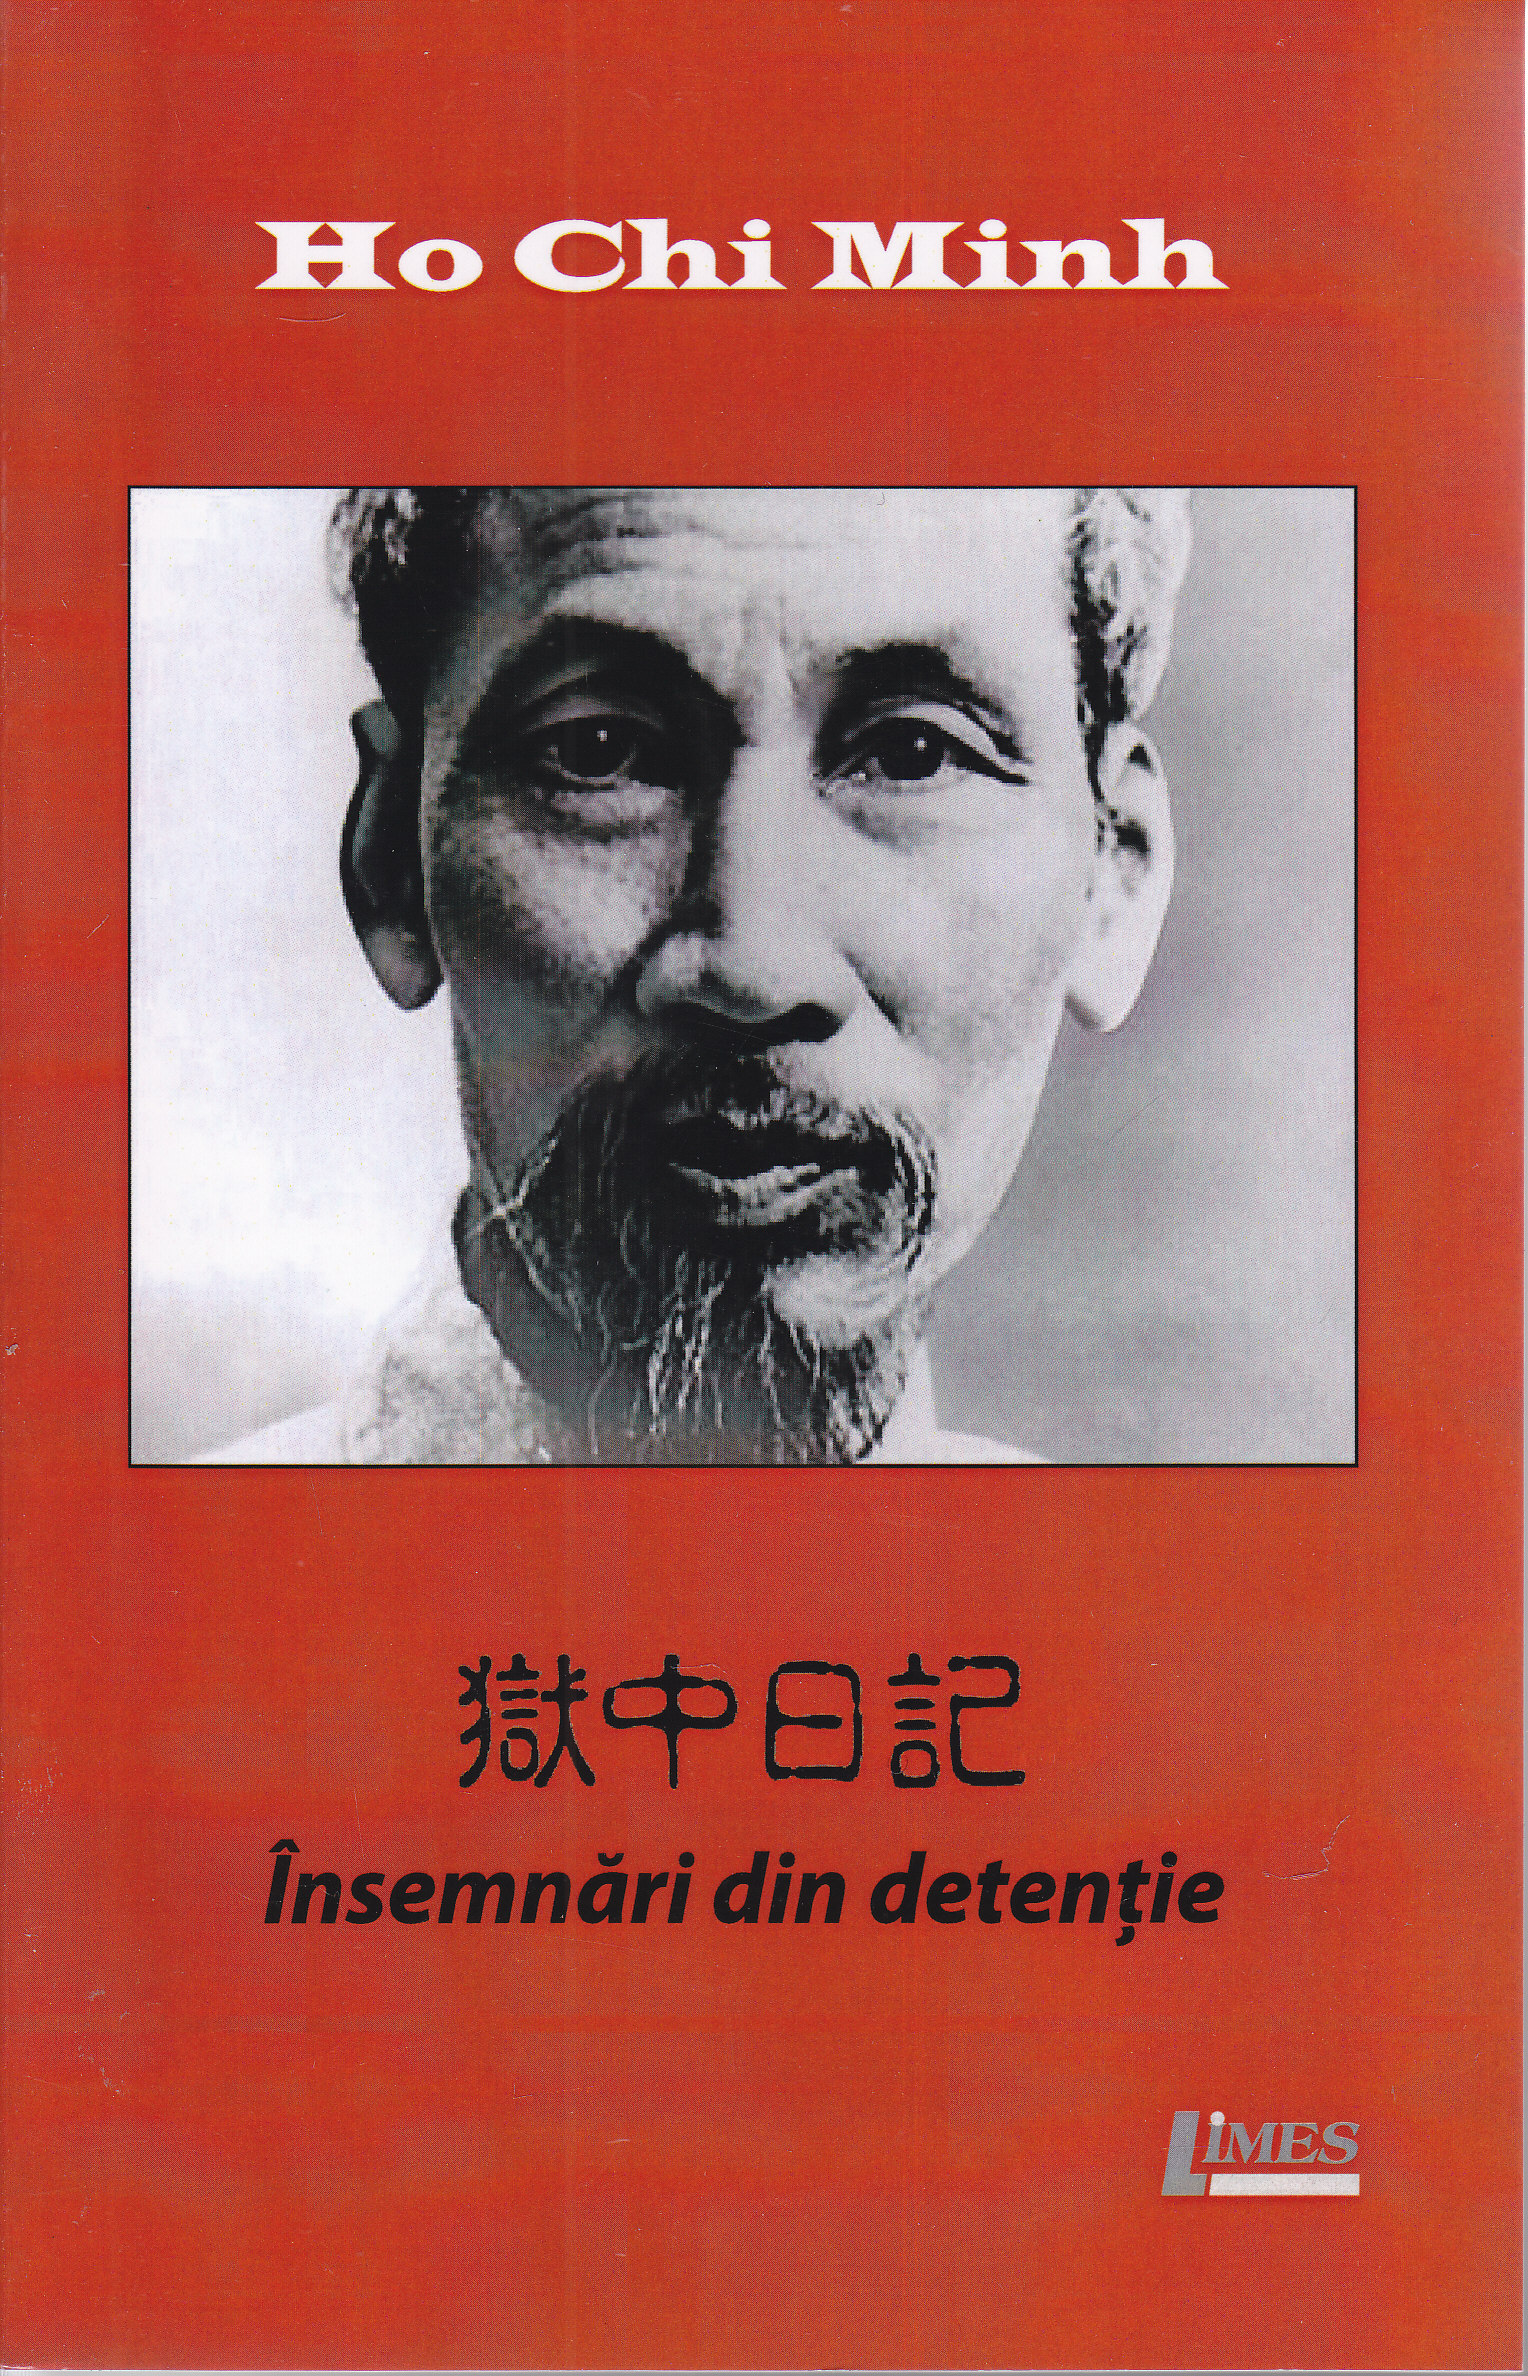 Insemnari din detentie - Ho Chi Minh